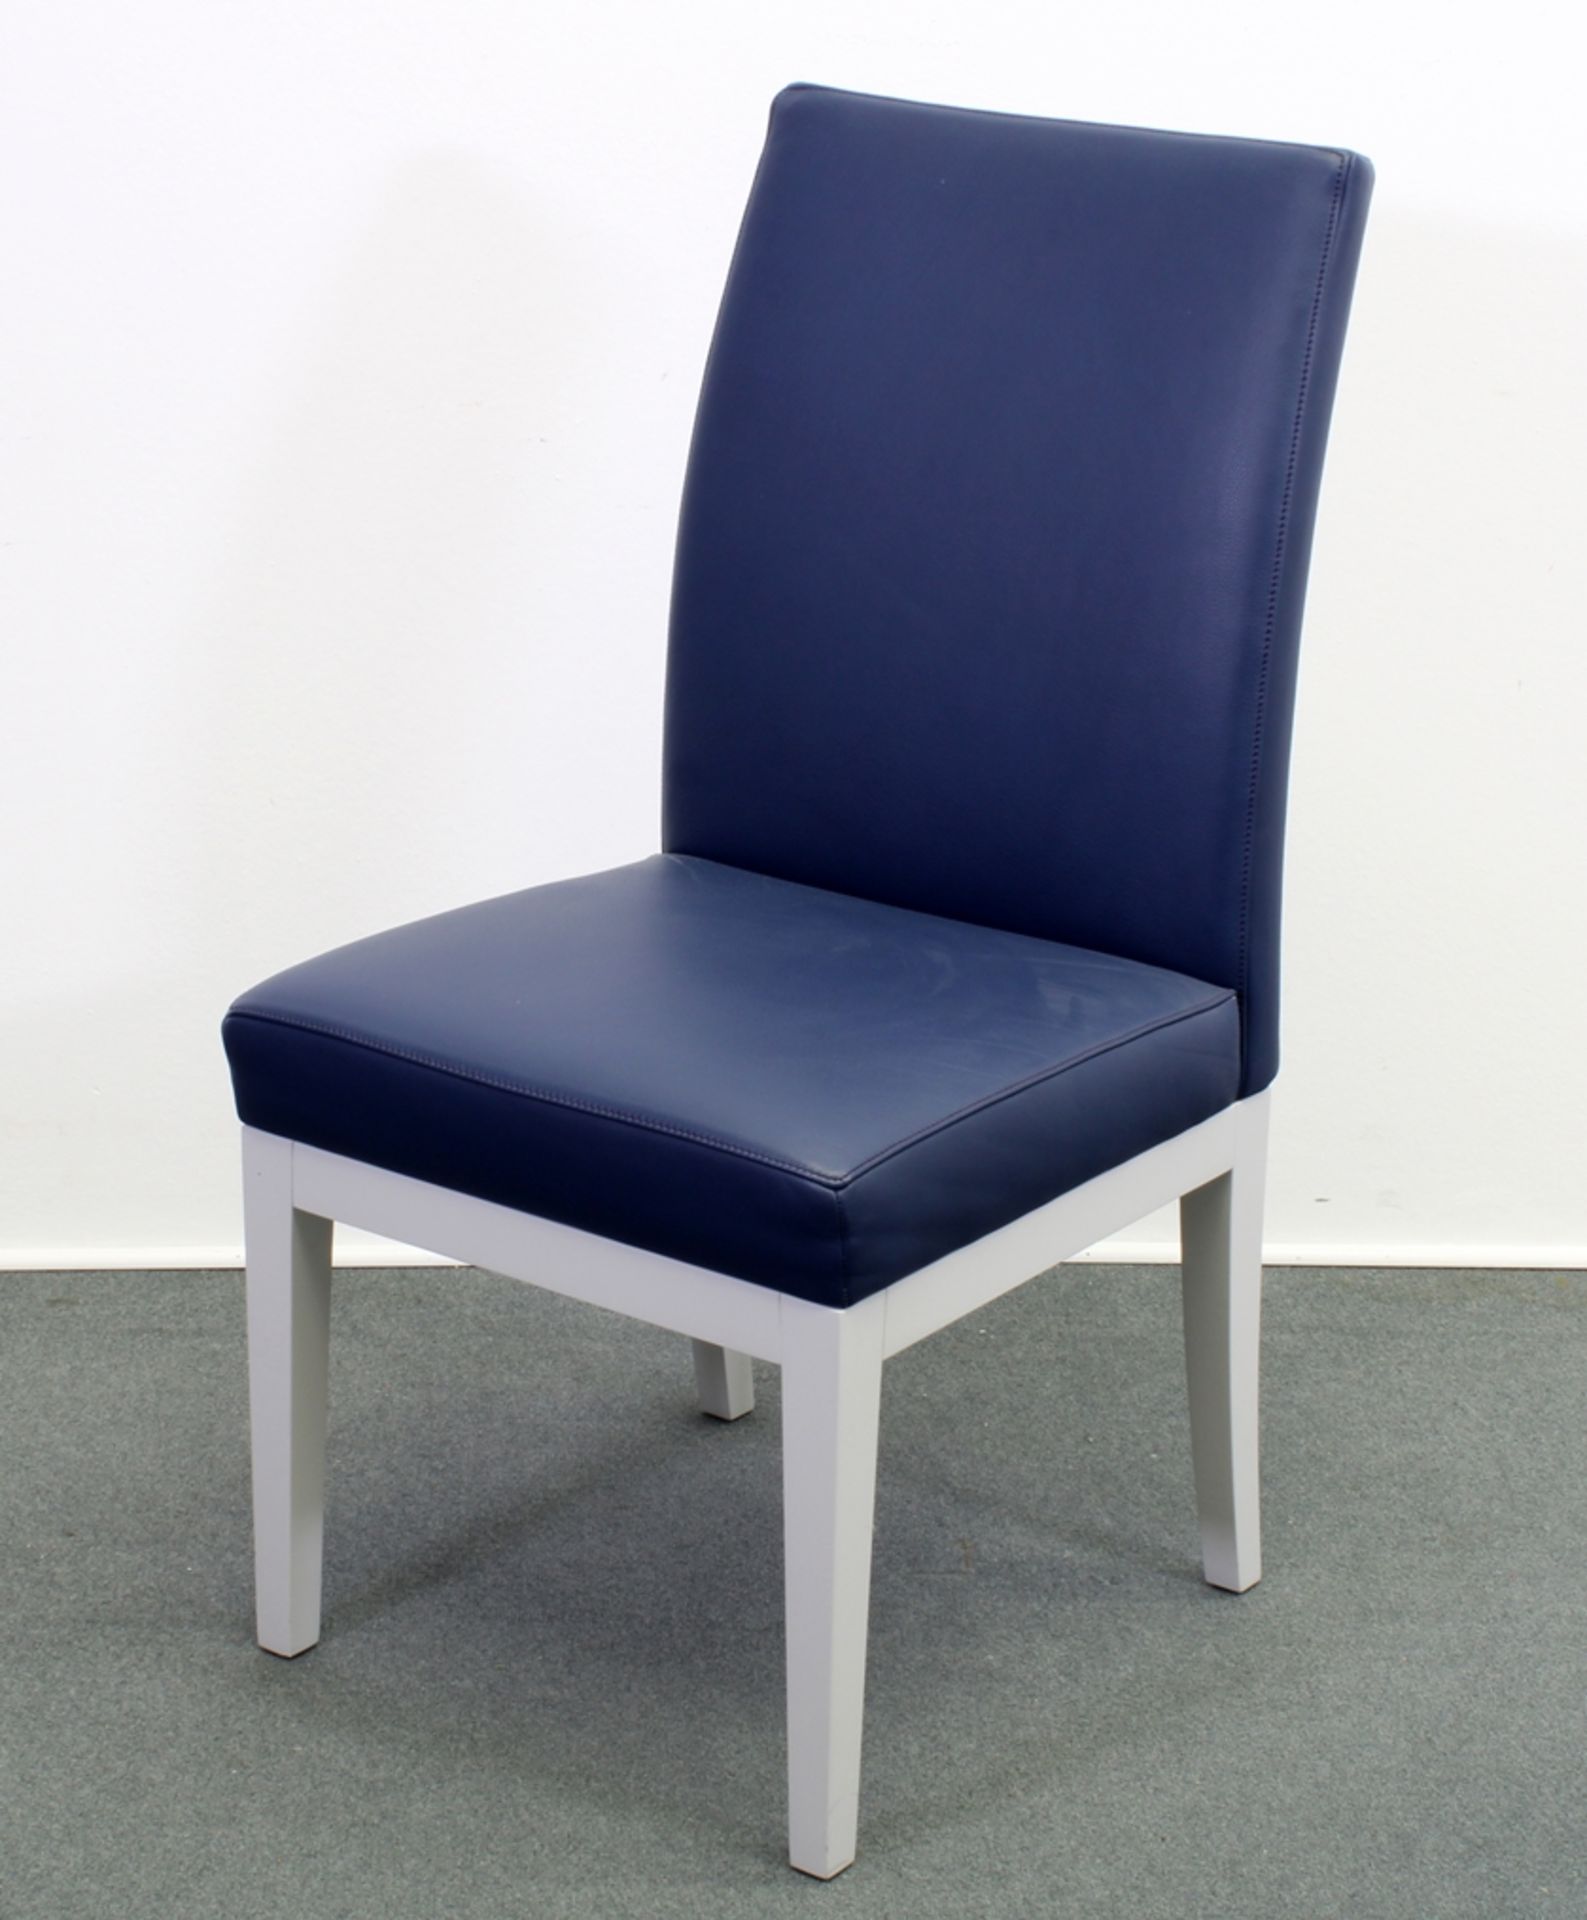 10 Stühle, DeSede DS 209, Schweiz 1999, Design von Jean Pierre Dovat, Polster Leder indigoblau, 8 S - Bild 4 aus 5